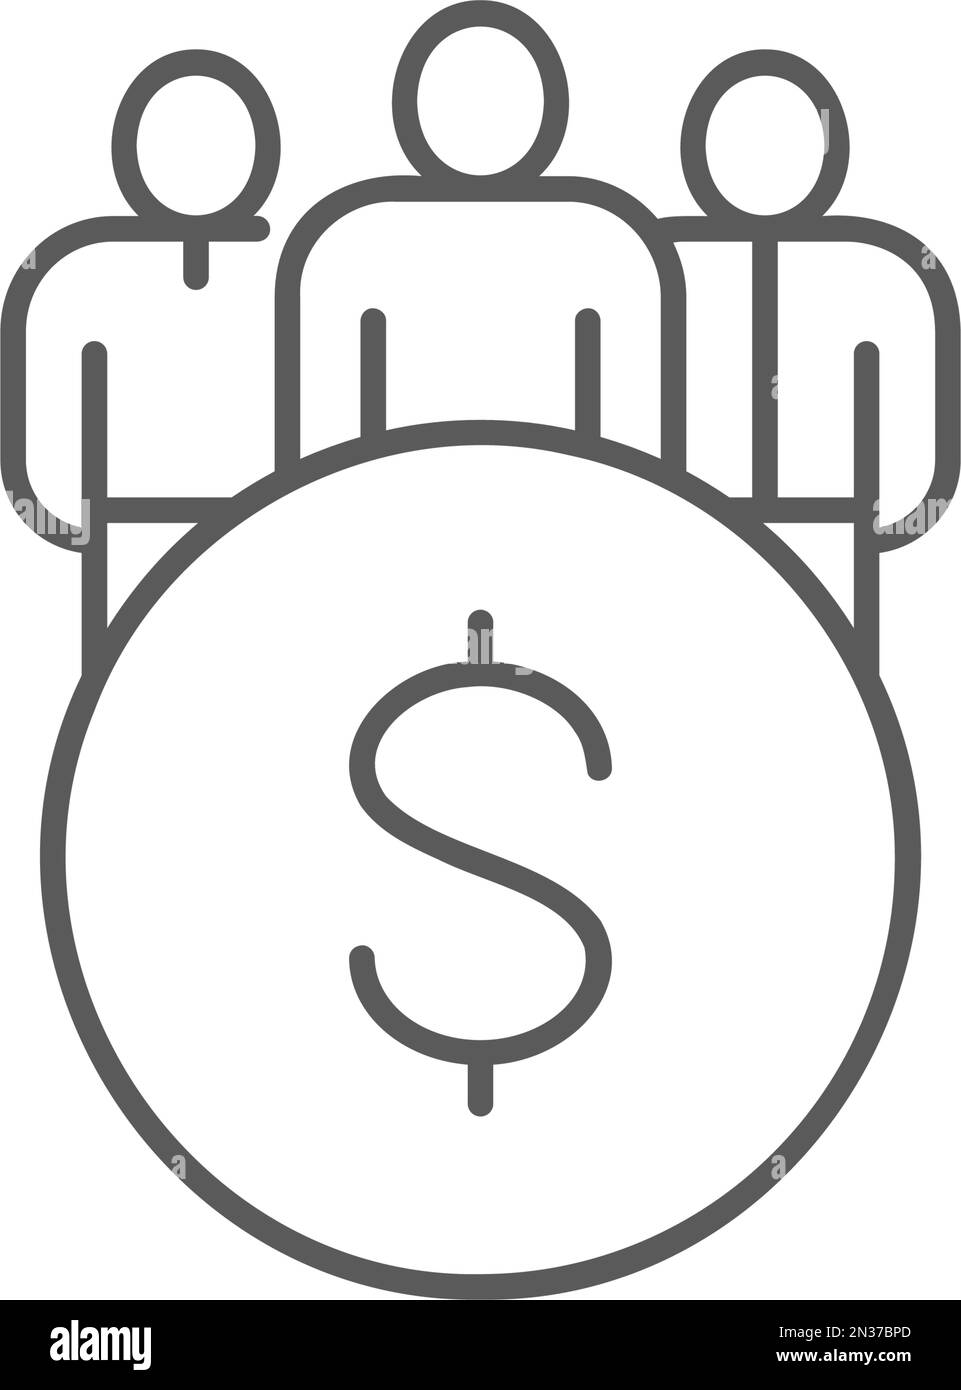 Coin avec l'équipe, l'équipe commerciale, l'icône de ligne du groupe d'utilisateurs. Design de symbole Finance, paiement, financement d'investissement. Illustration de Vecteur